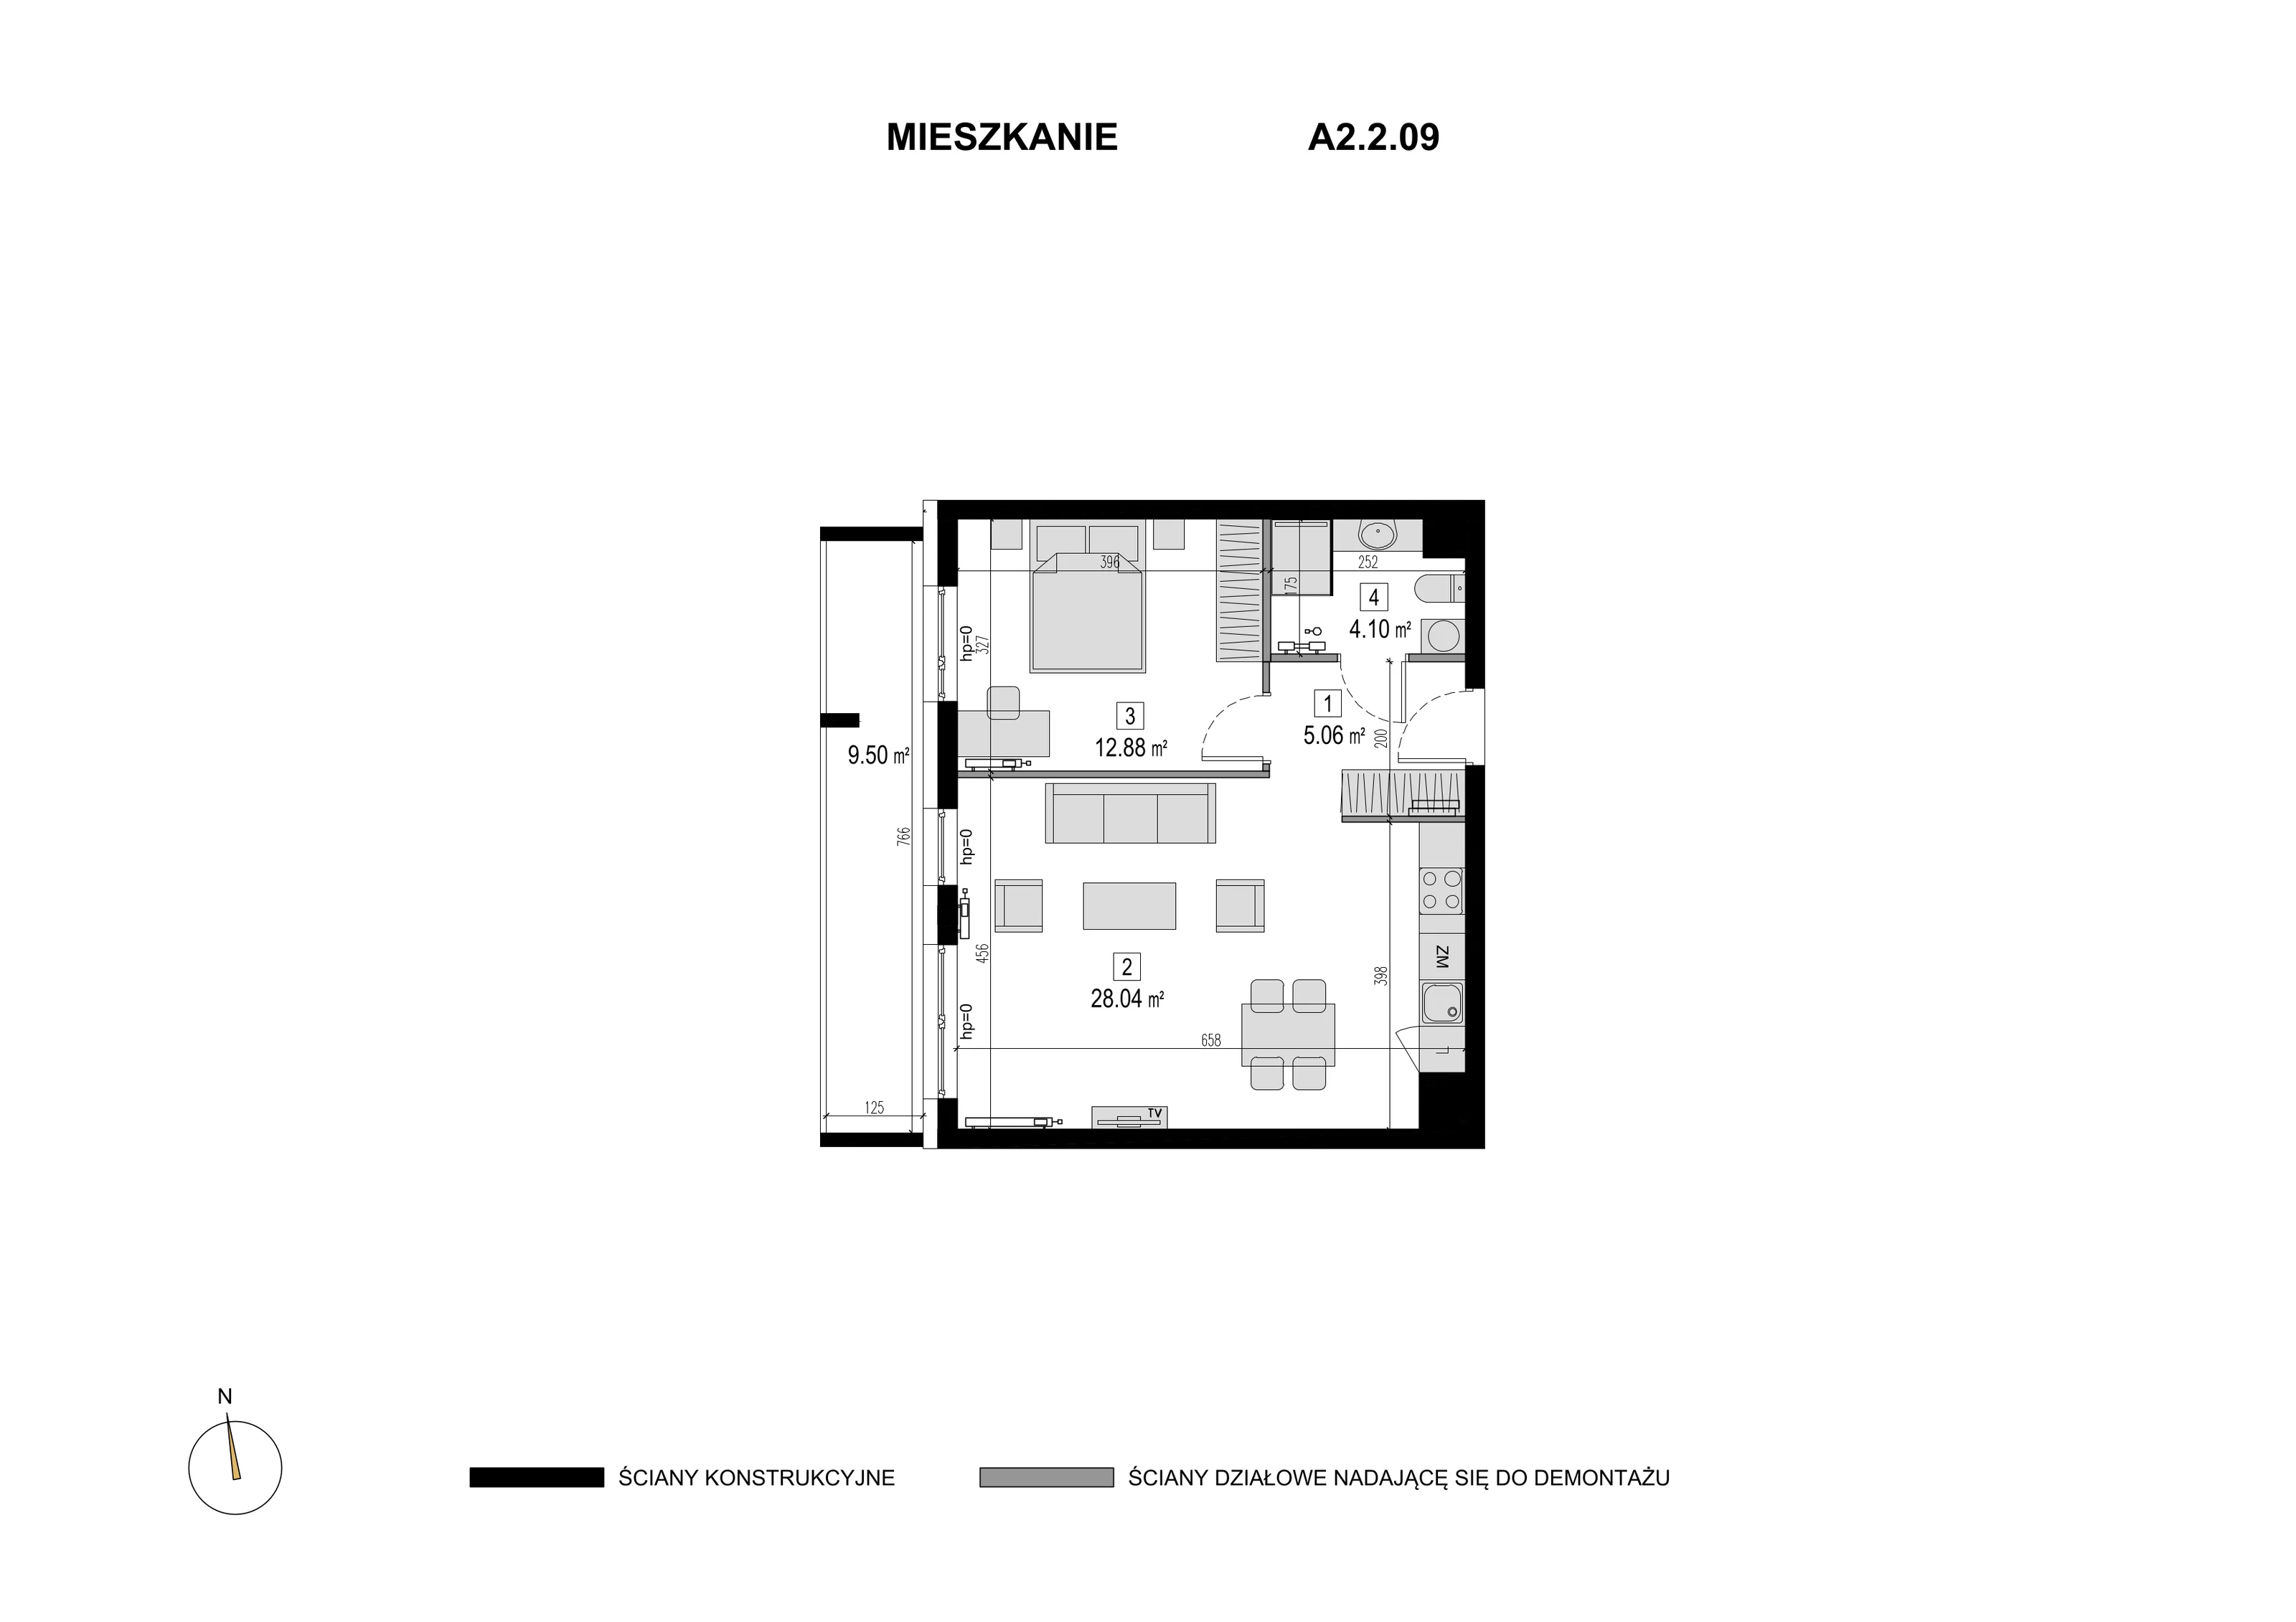 Mieszkanie 50,08 m², piętro 1, oferta nr A2.2.09, Novaforma, Legnica, ul. Chojnowska